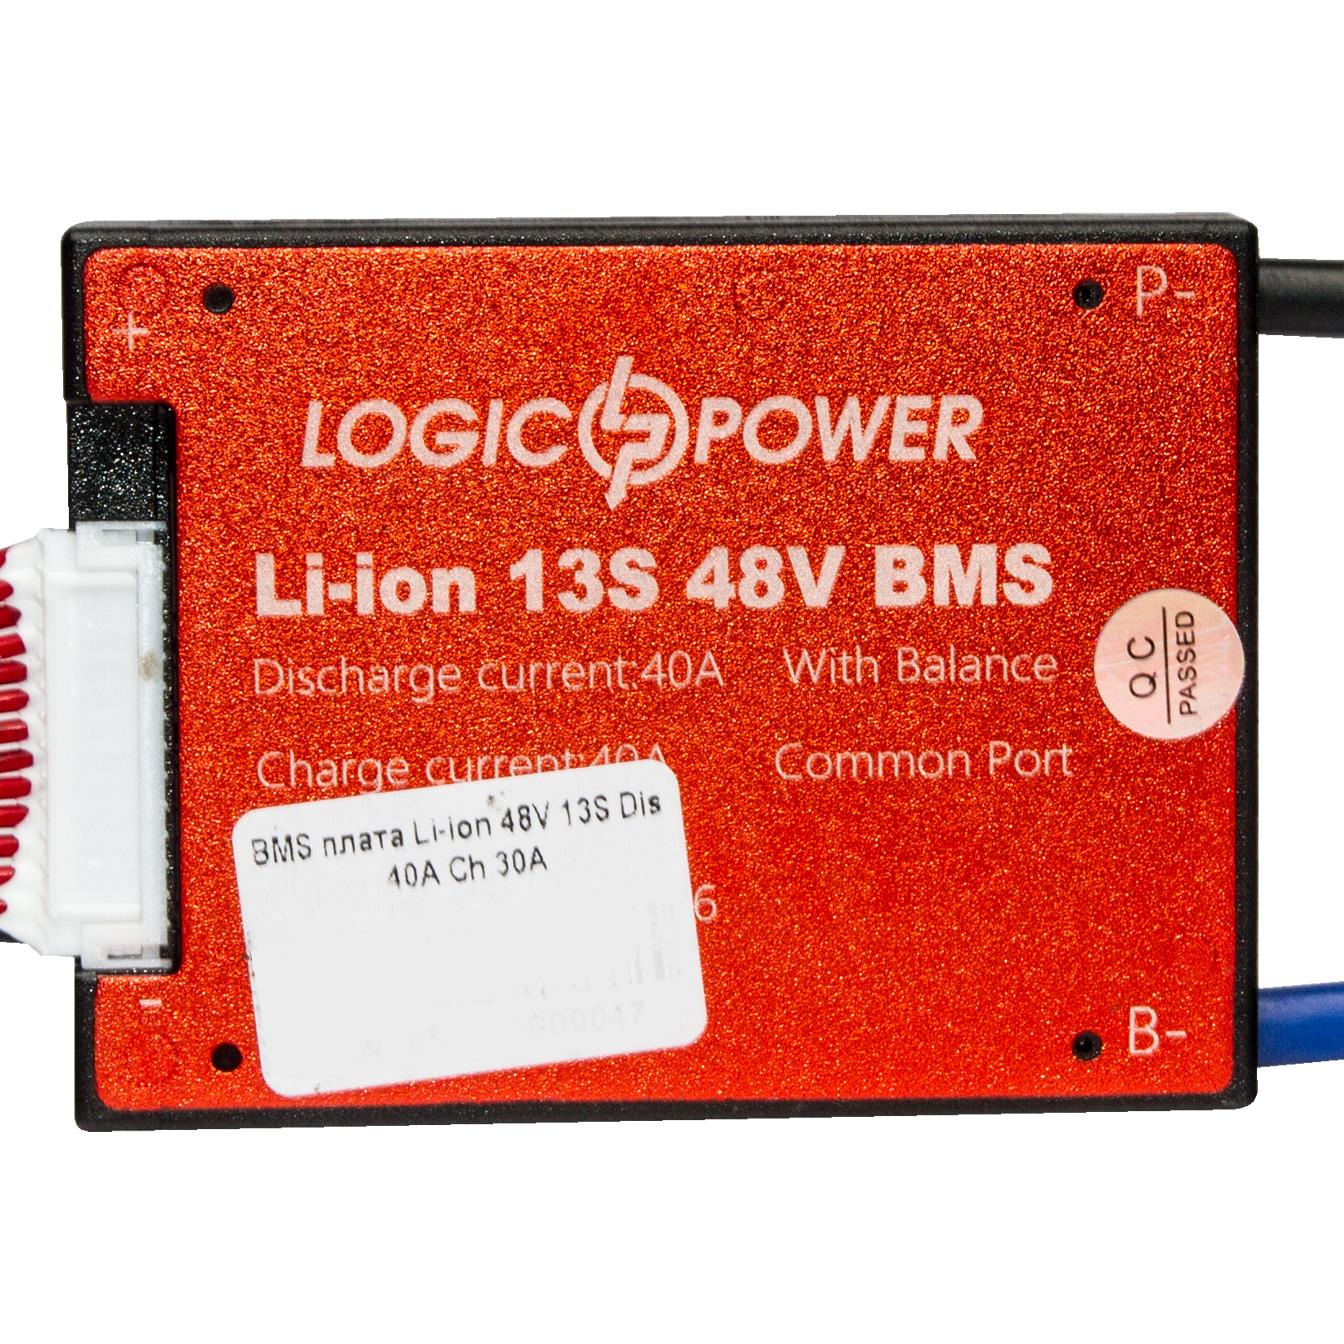 BMS плата LogicPower Li-ion 48V 13S 40A симметрия (9511)